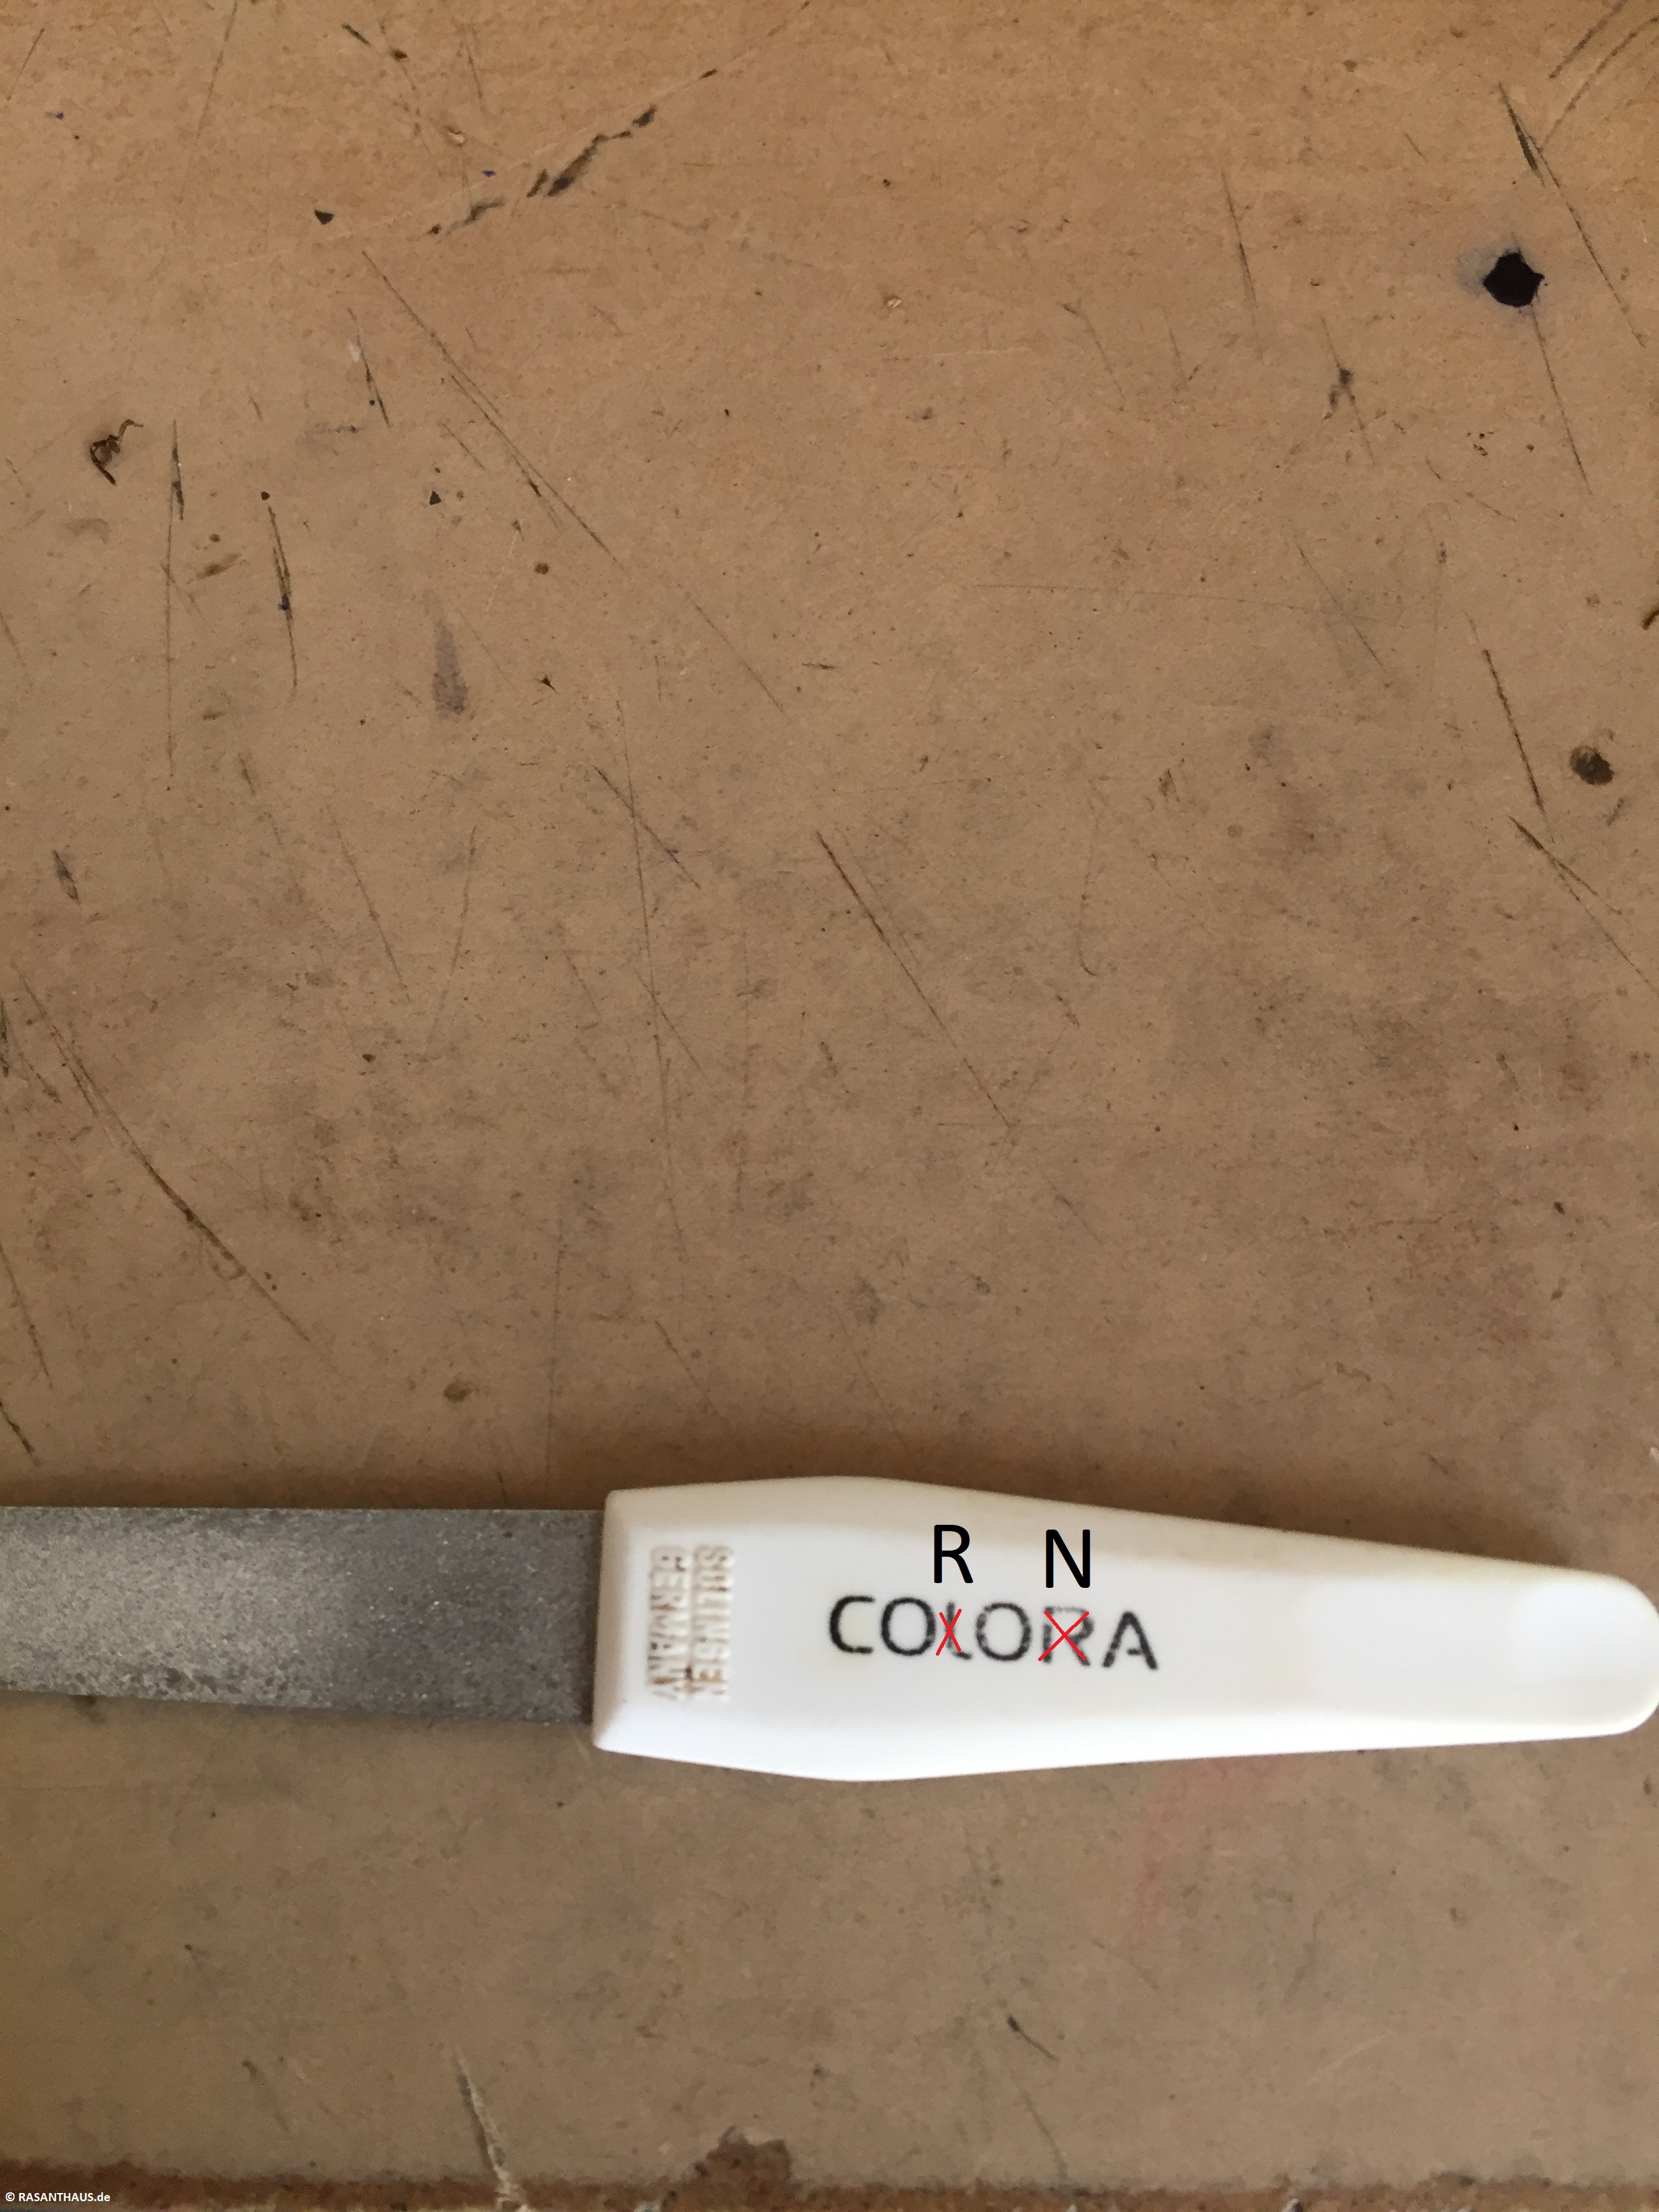 eine Nagelfeile mit einer leicht korrigierten Corona-Aufschrift, die eigentlich Colora heißt